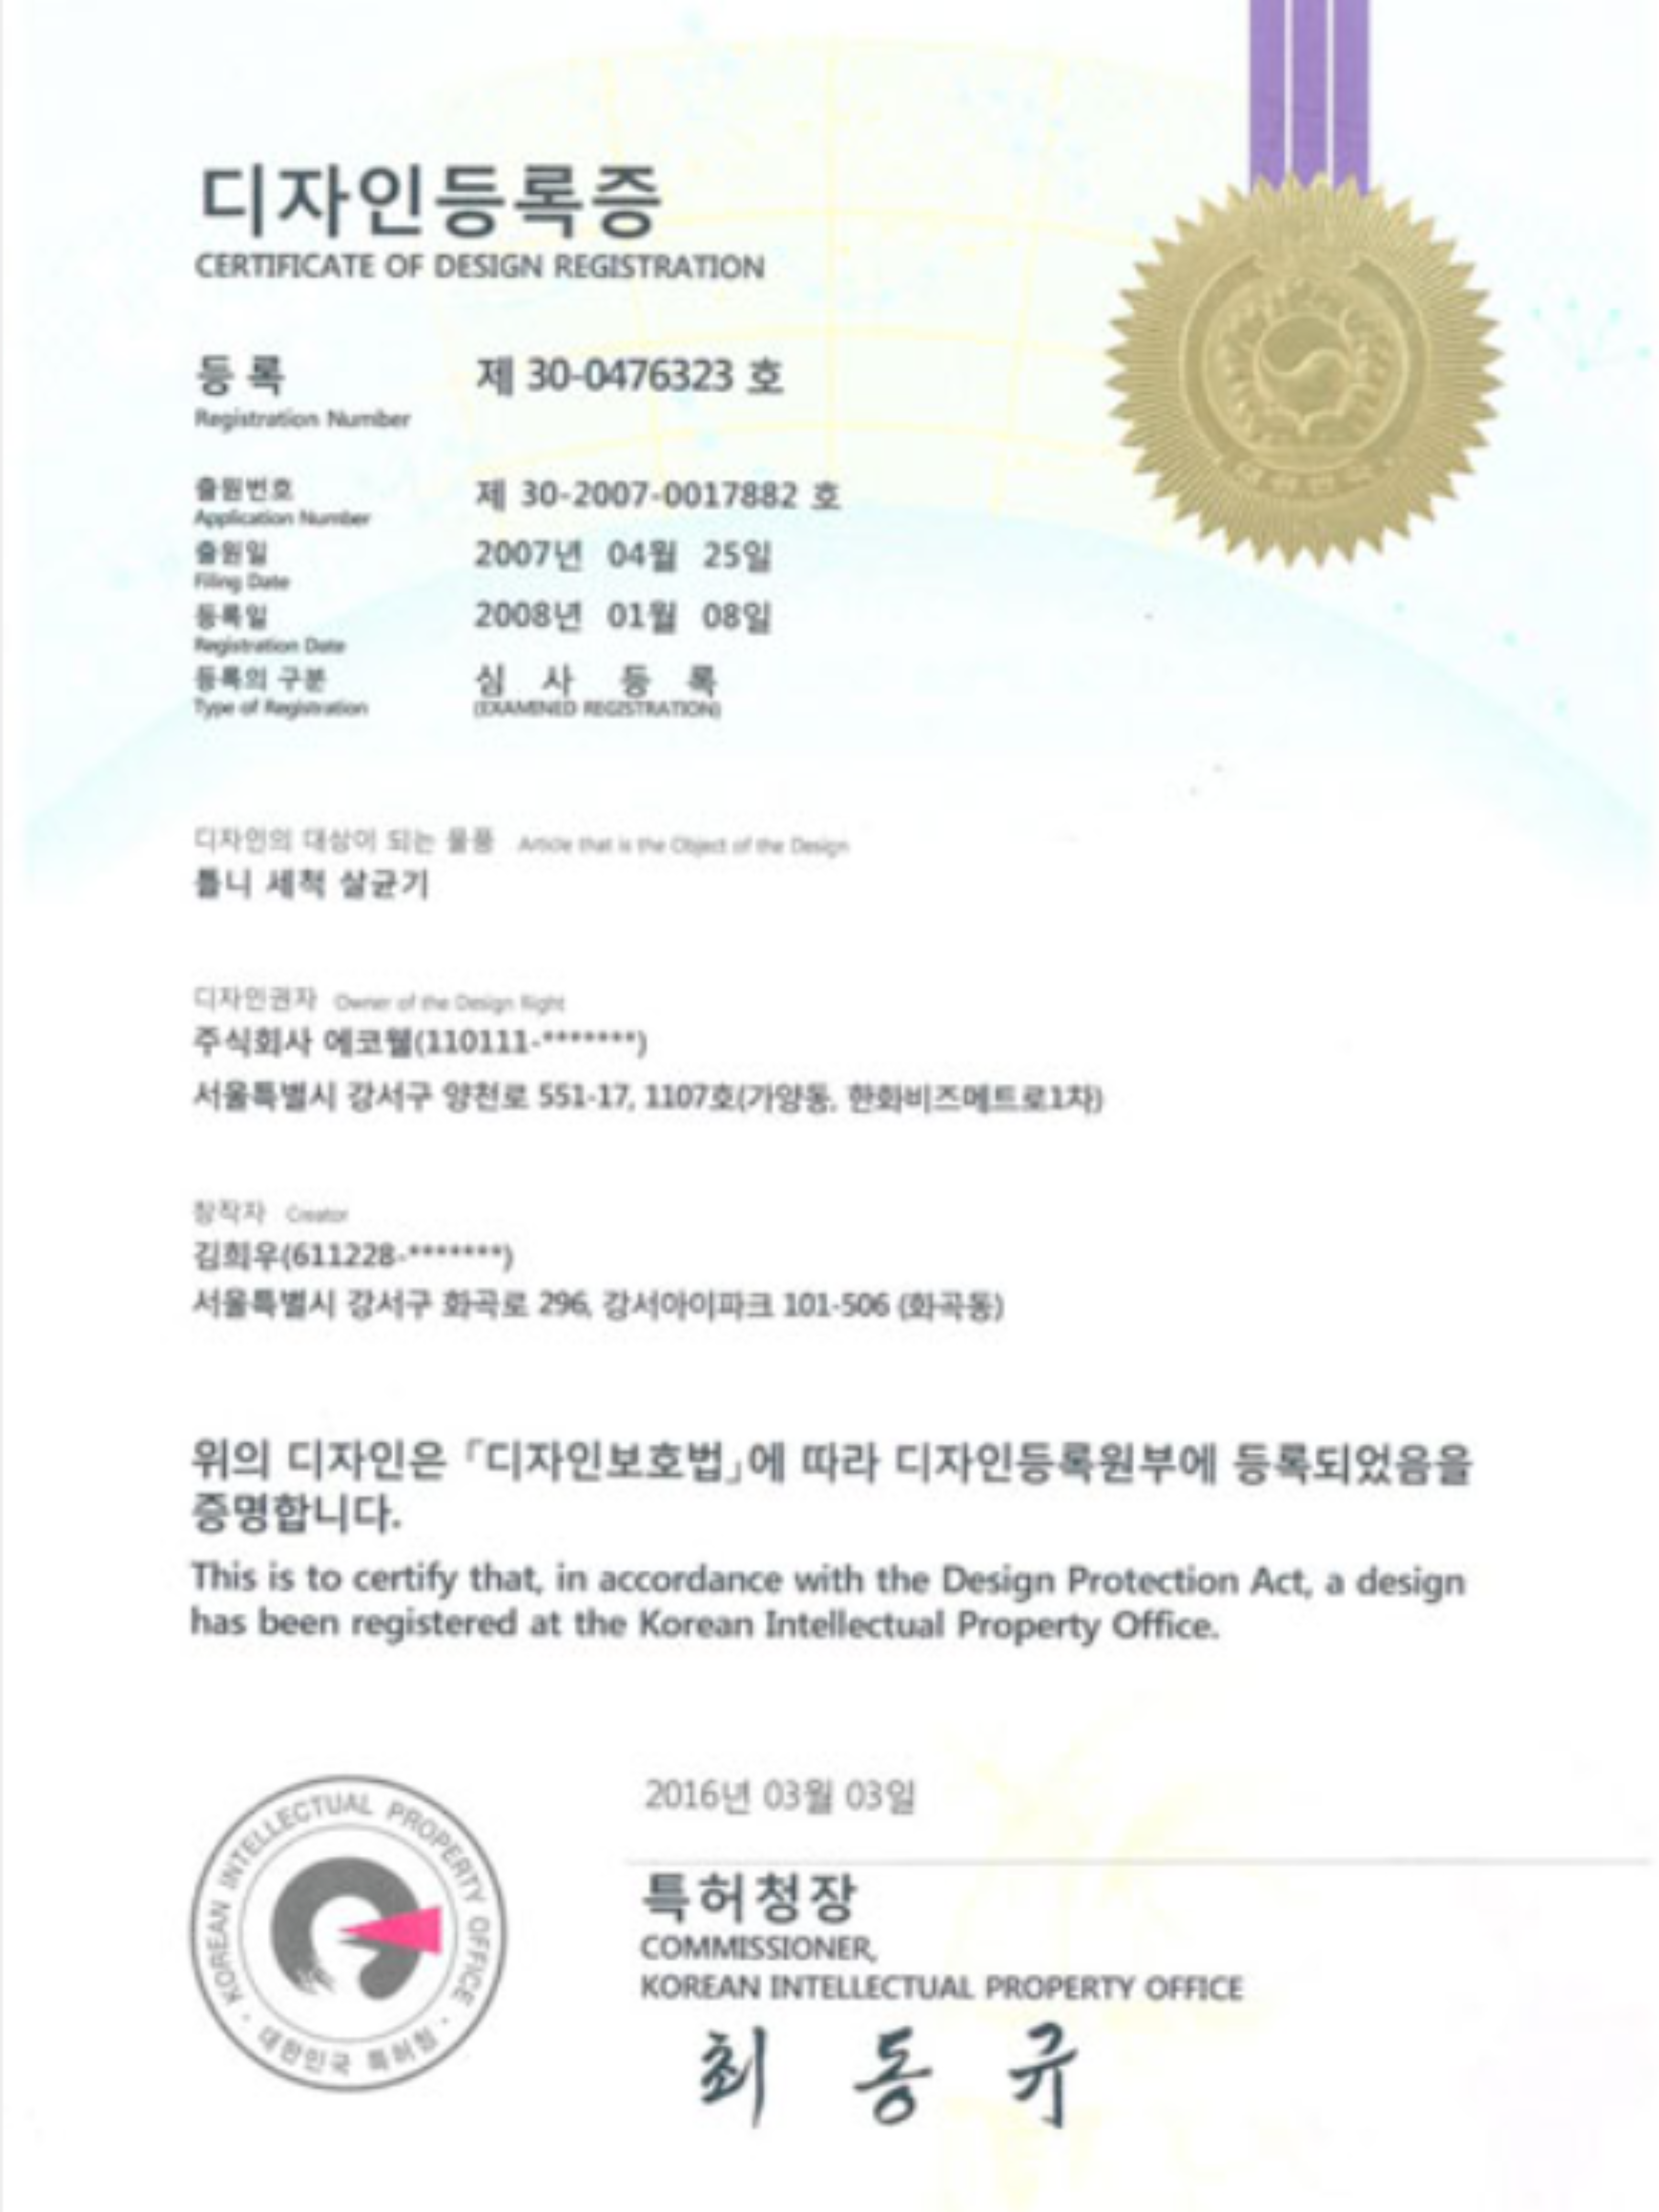 Certificado de registro del diseño de un dispositivo de limpieza y esterilización de prótesis dentales